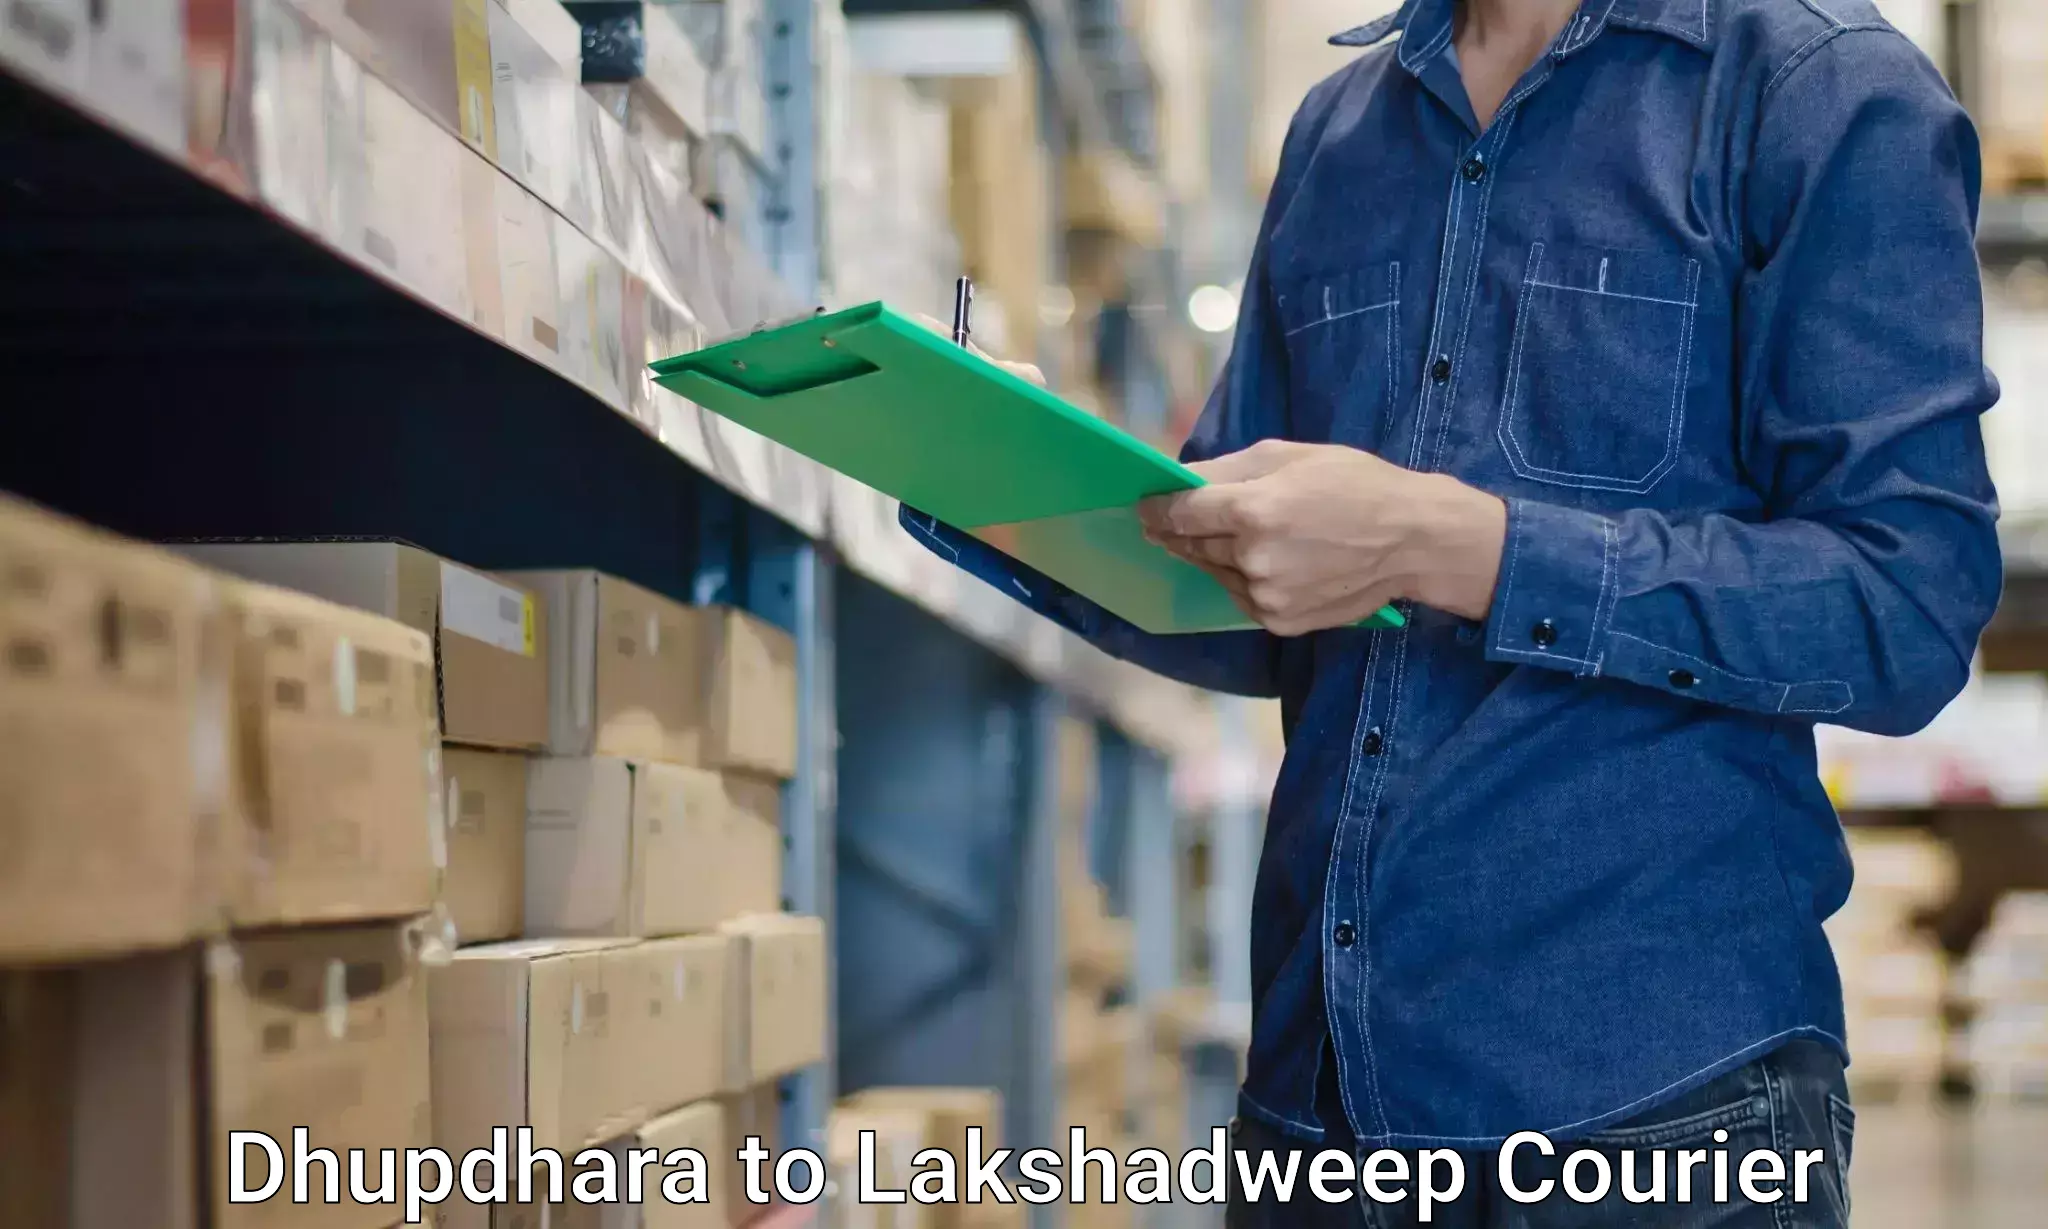 Efficient moving company Dhupdhara to Lakshadweep